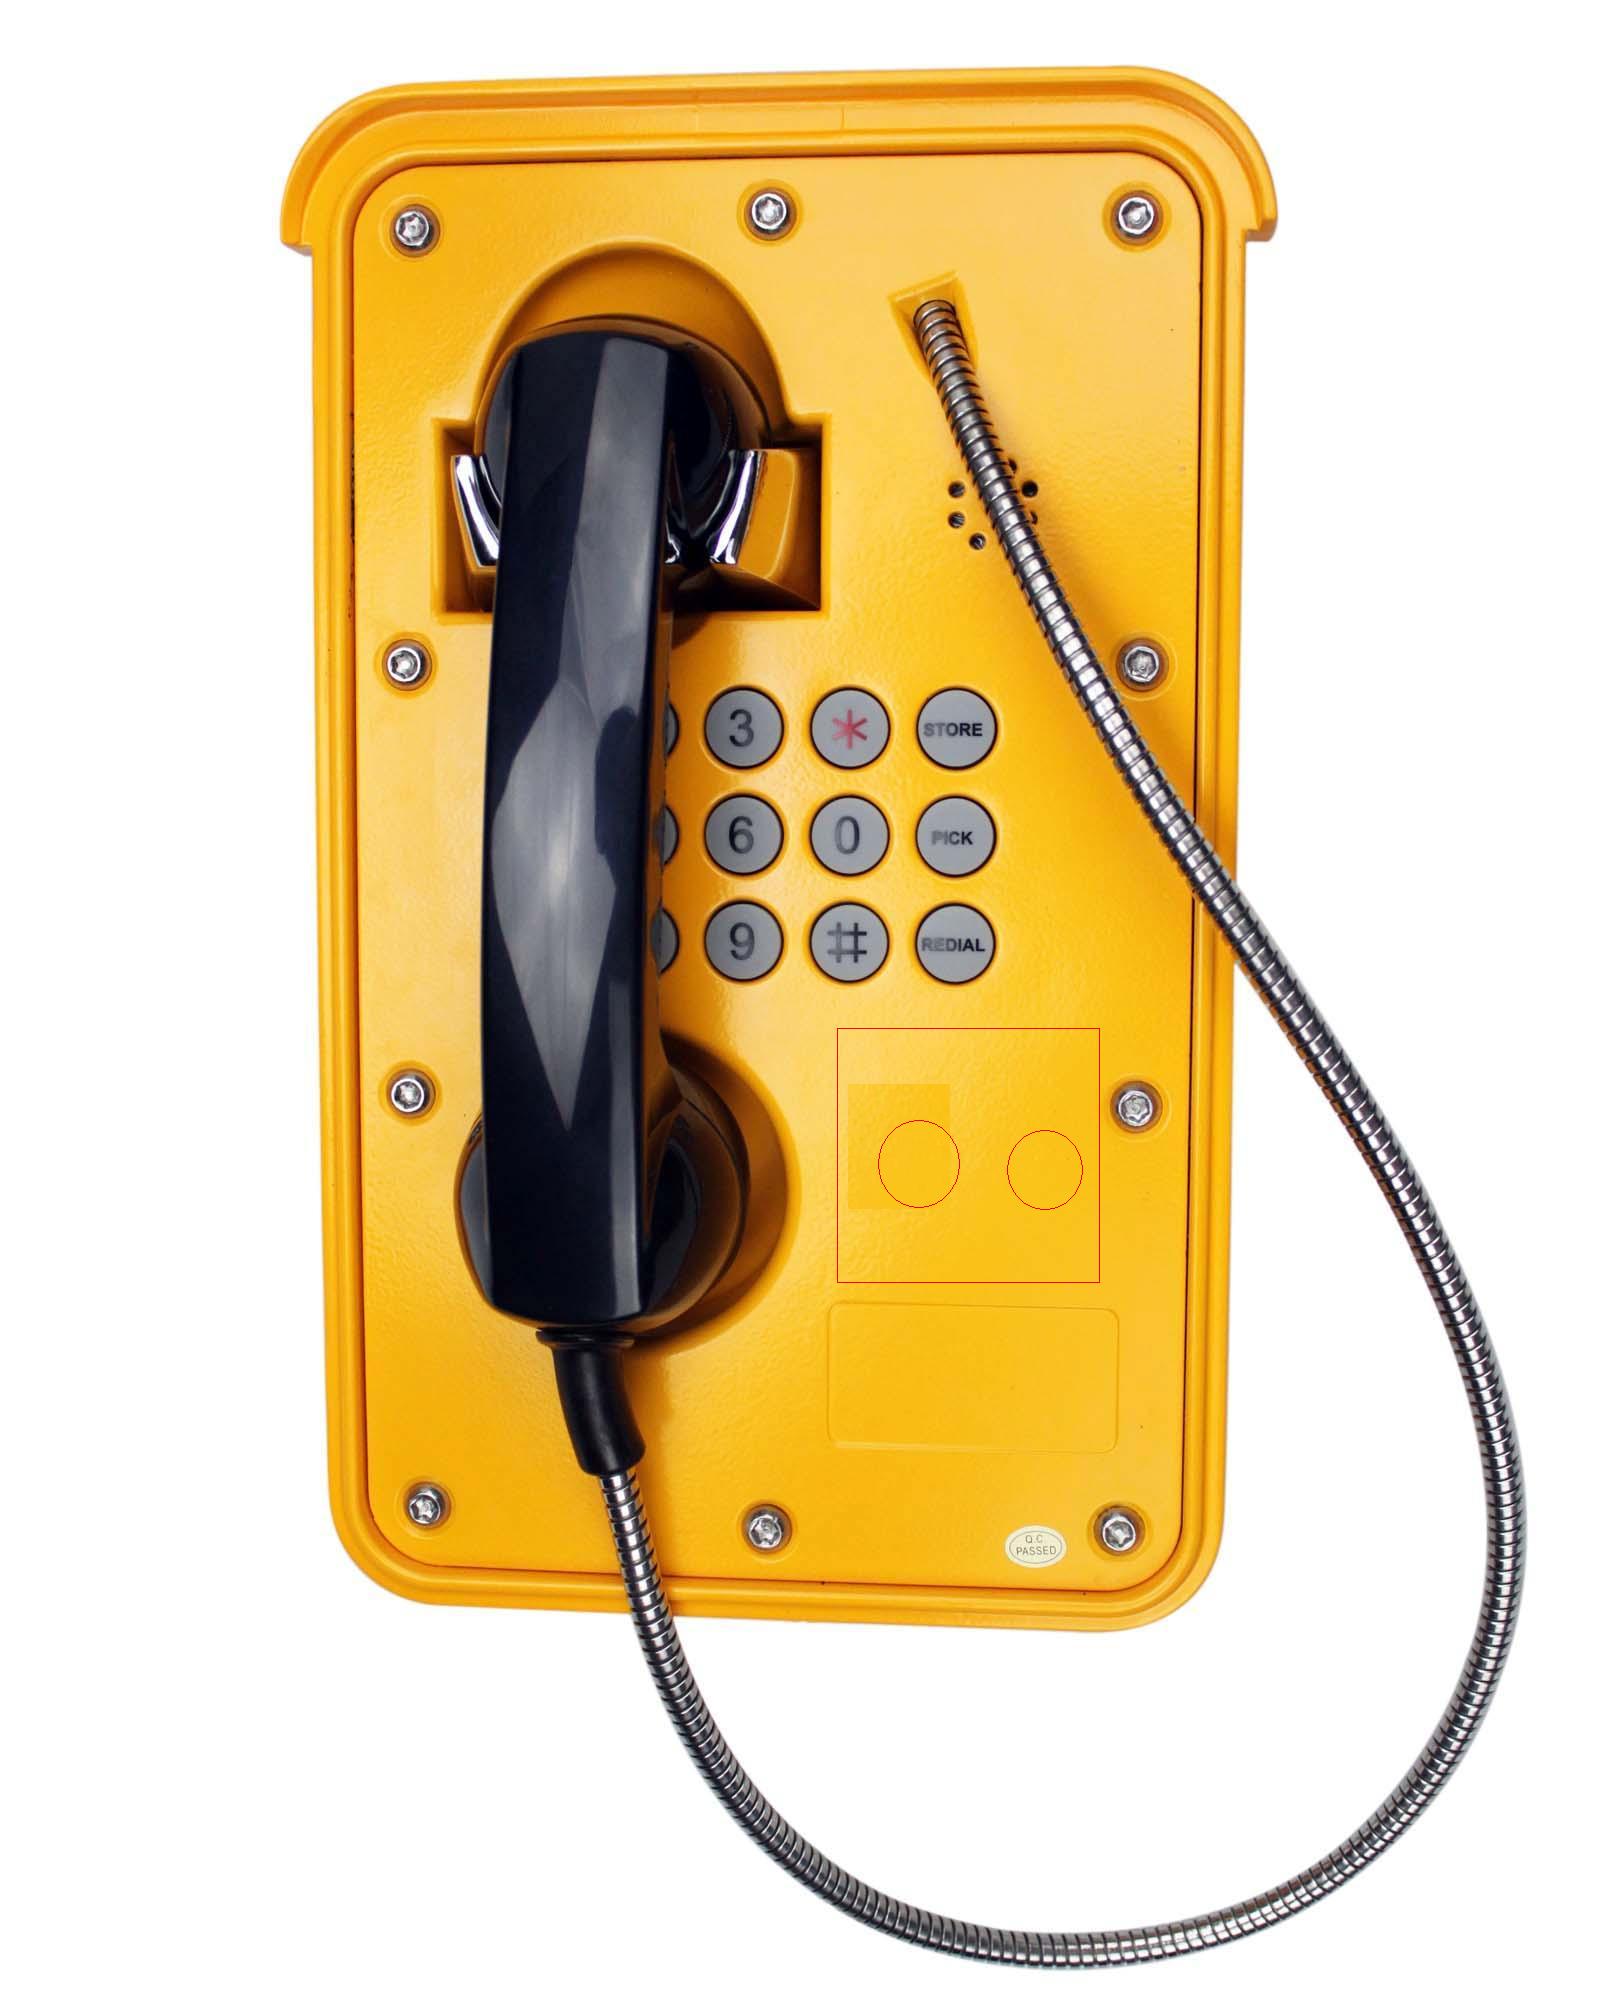 船务专用防水防潮电话机 隧道紧急电话机 厂用应急话机